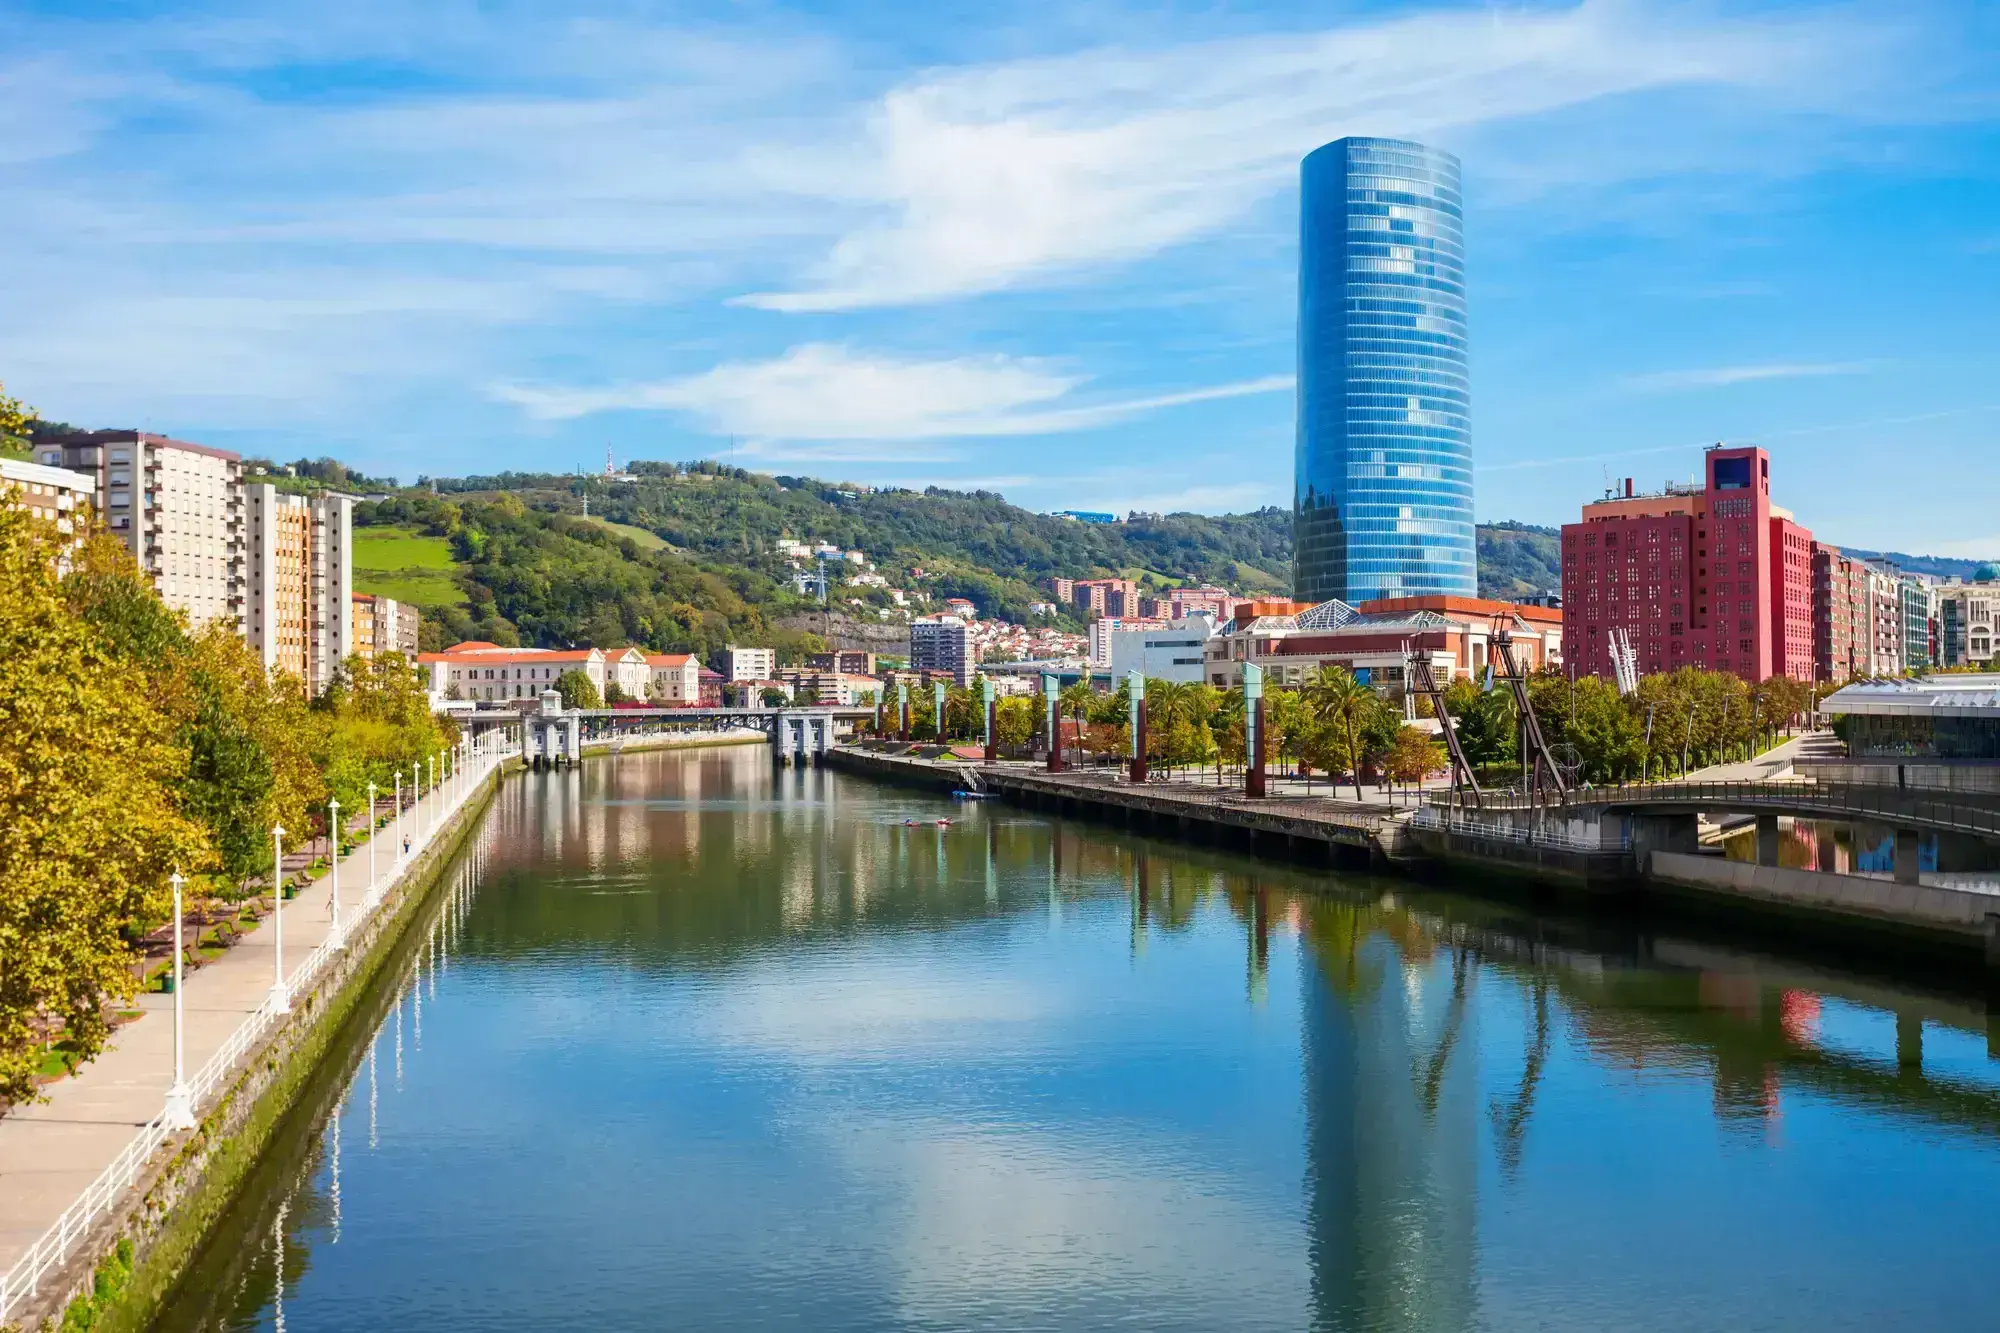 Bilbao UN-Habitat